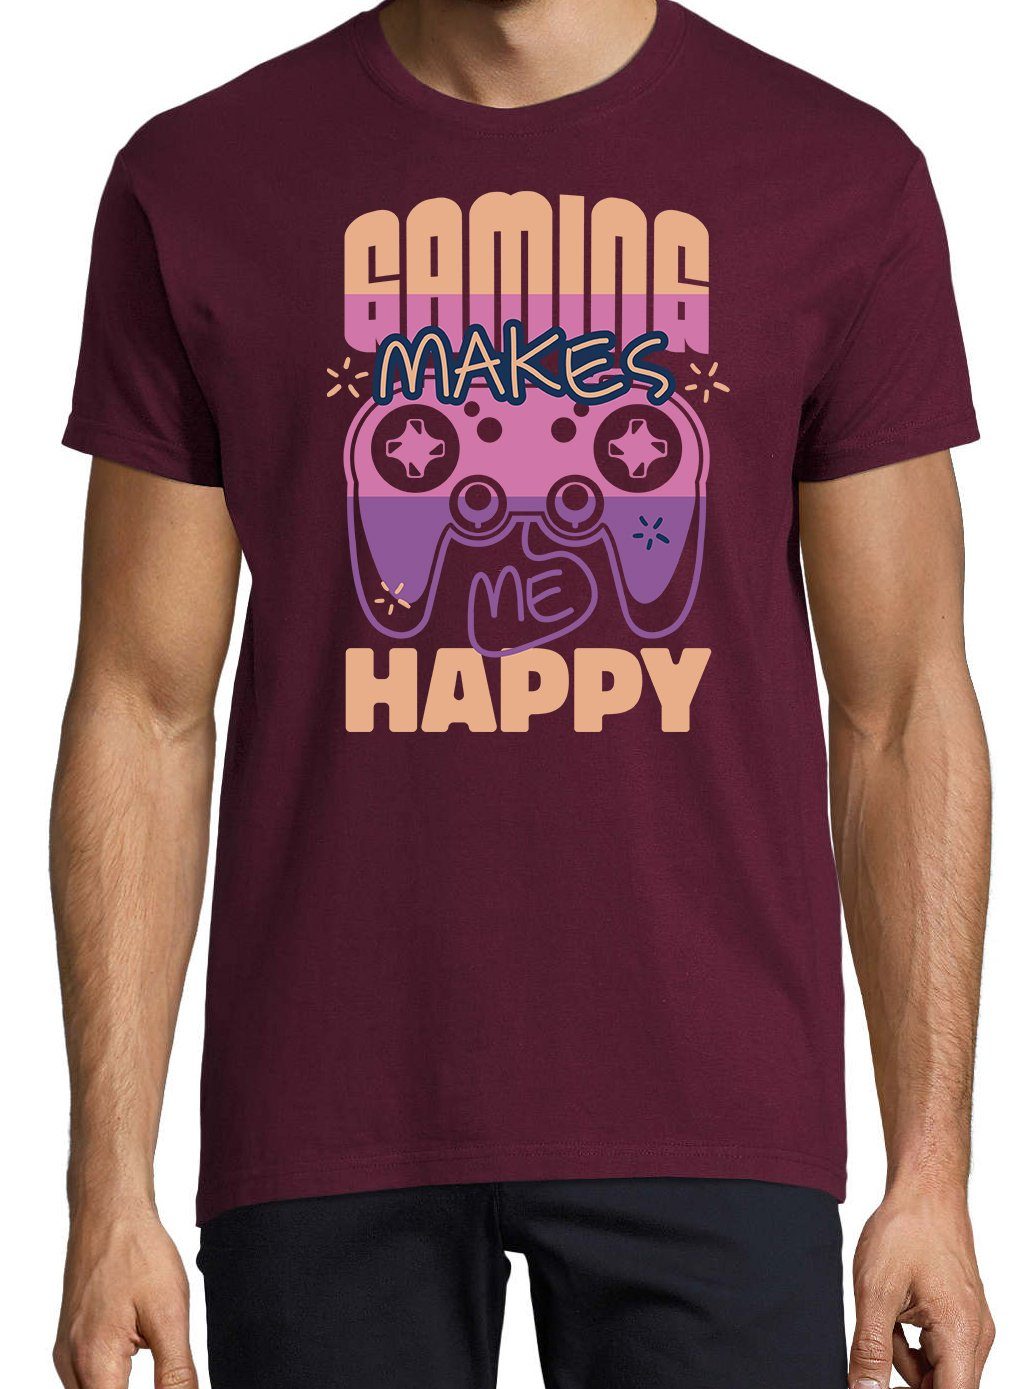 Youth Designz T-Shirt Gaming Herren Burgund Makes Frontprint Me mit lustigem Happy Shirt